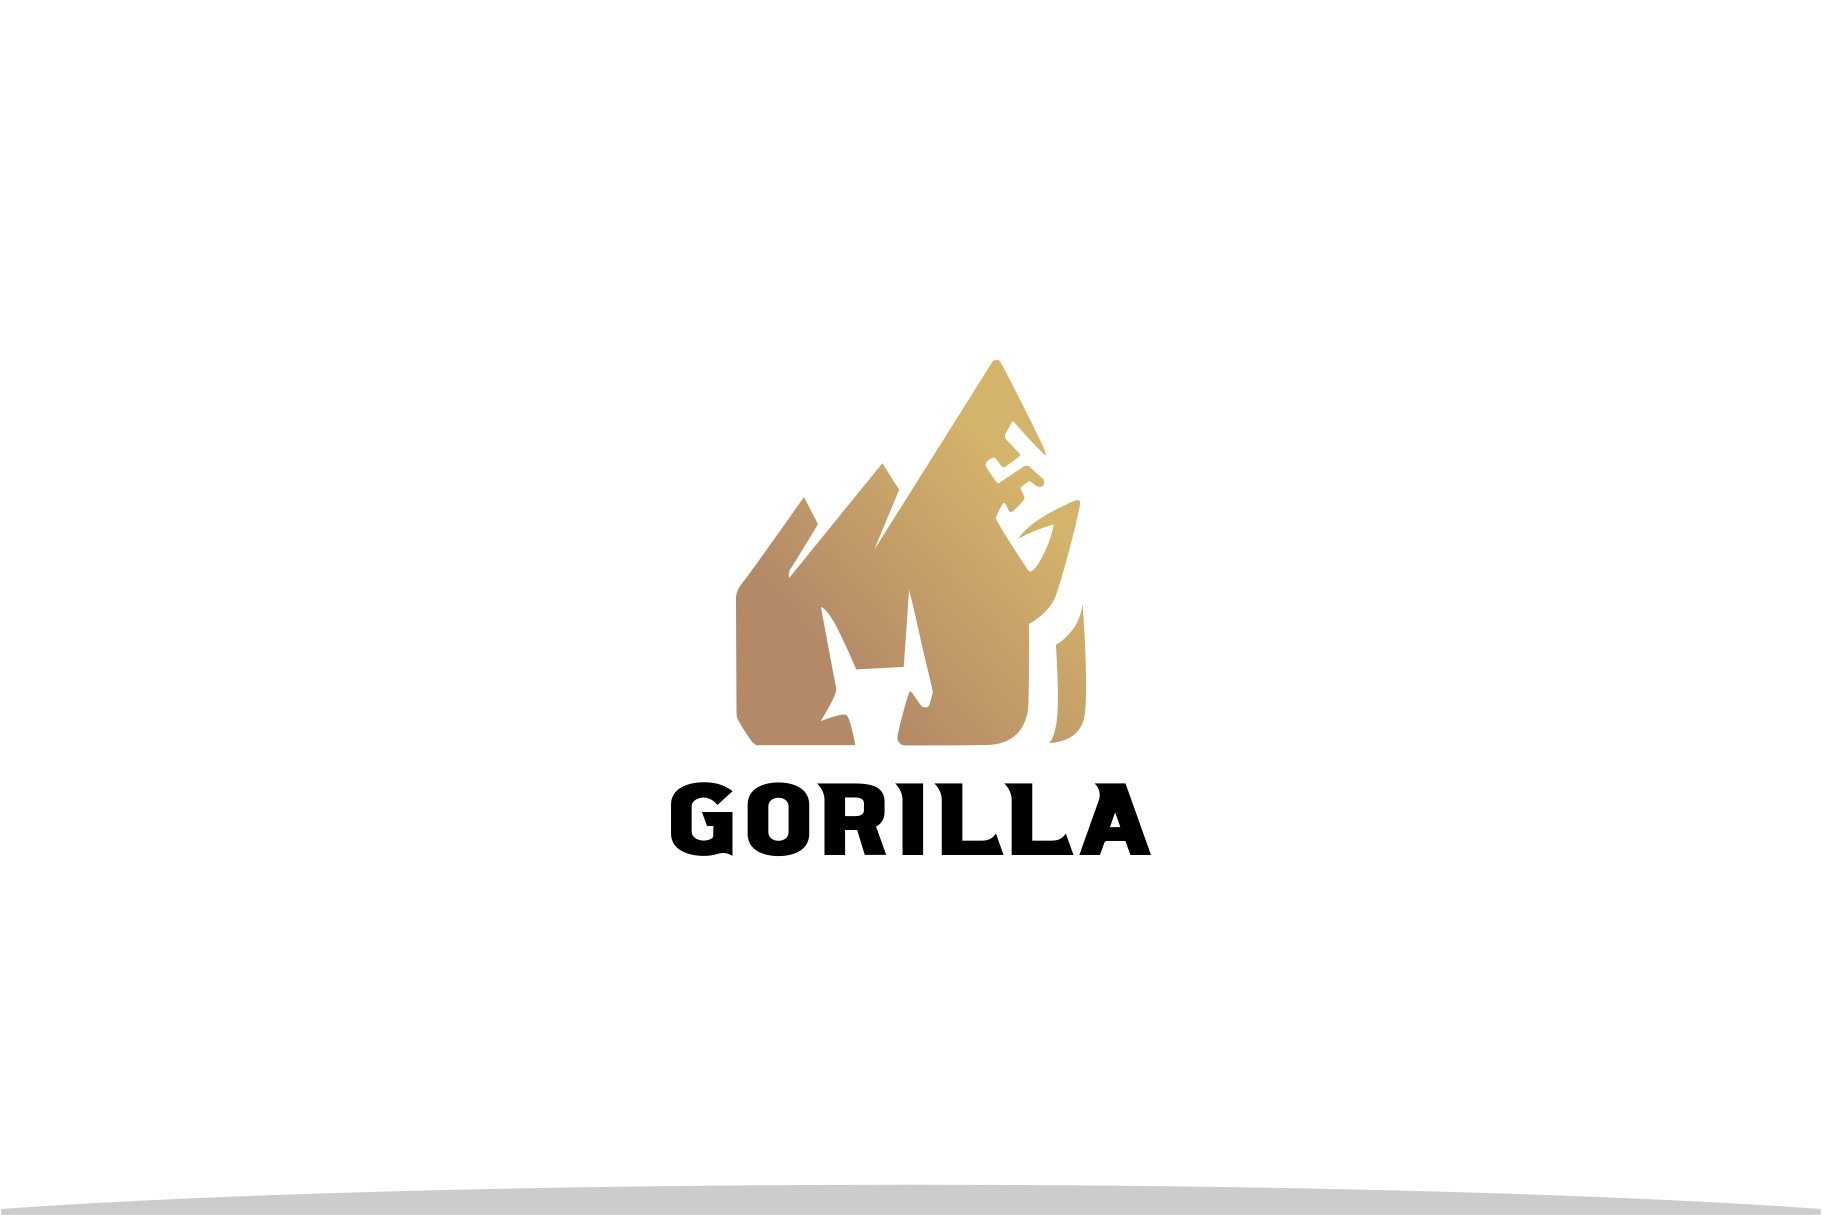 Gorilla Mountain Logo preview image.